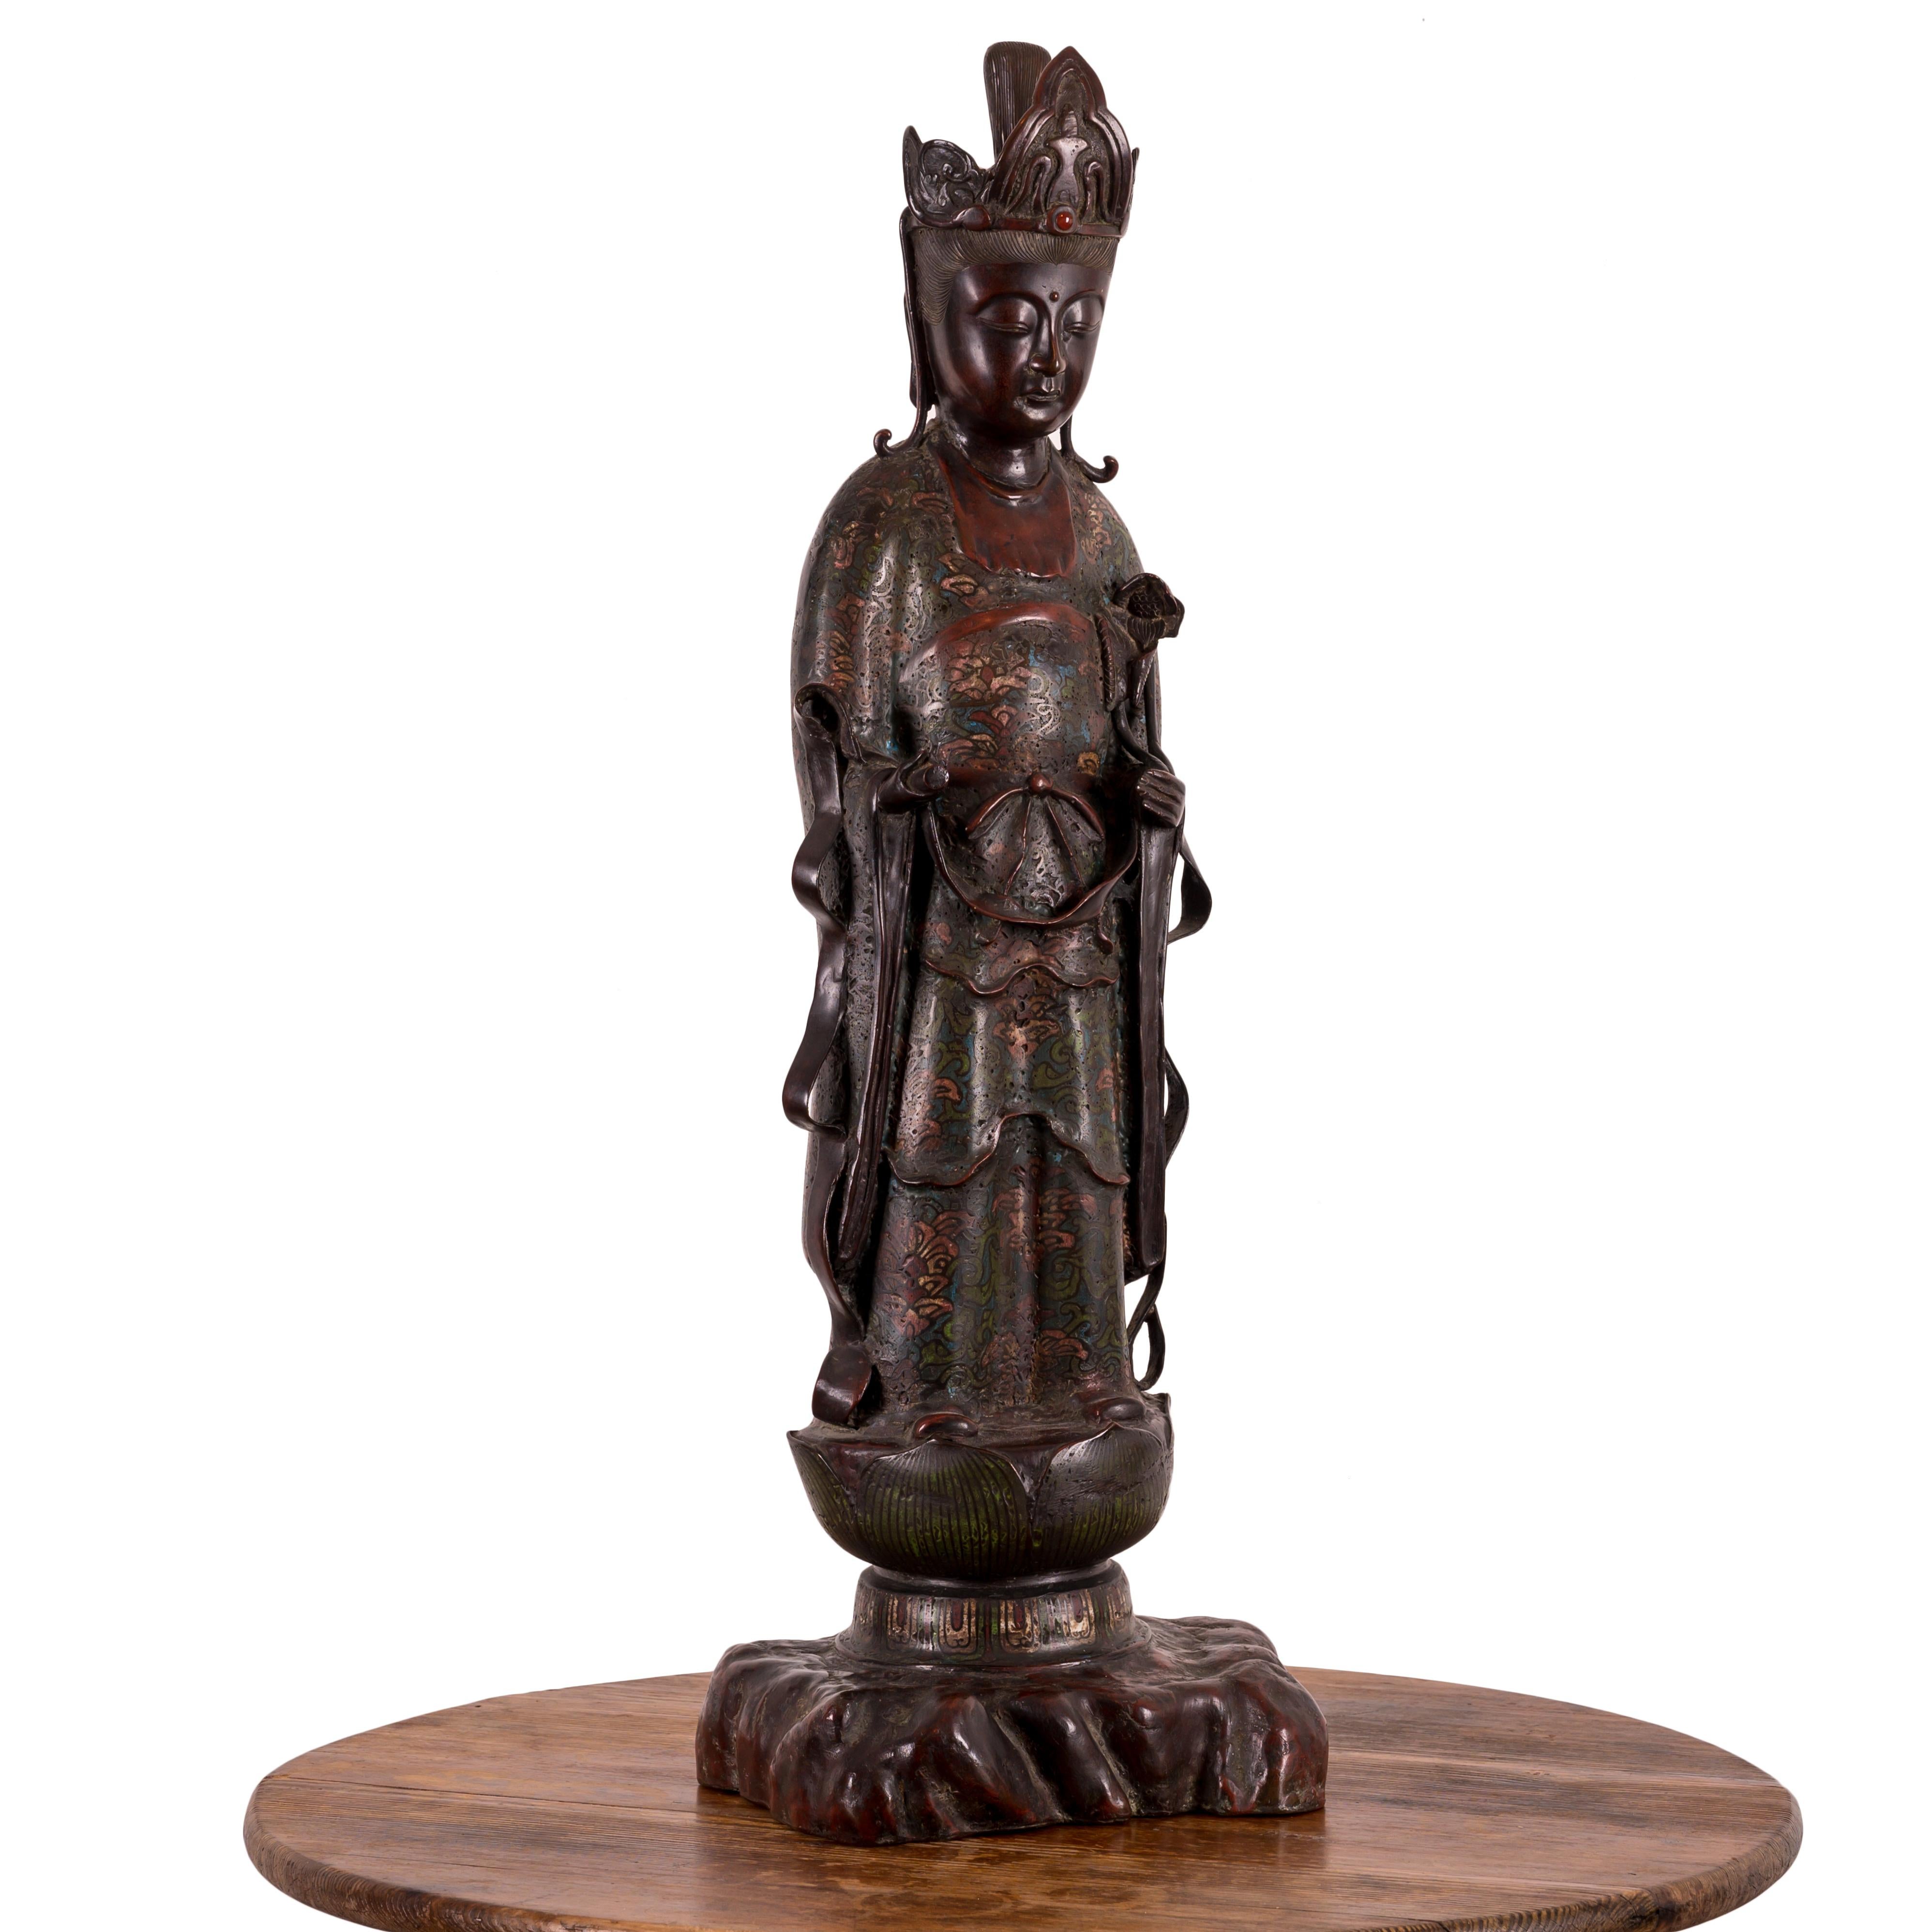 Japanische Champlevé-Bronzefigur des Kannon-Bodhisattva Avalokiteshvara, Meiji-Zeit.

9 ¾ Zoll breit, 8 Zoll tief und 29 ½ Zoll hoch